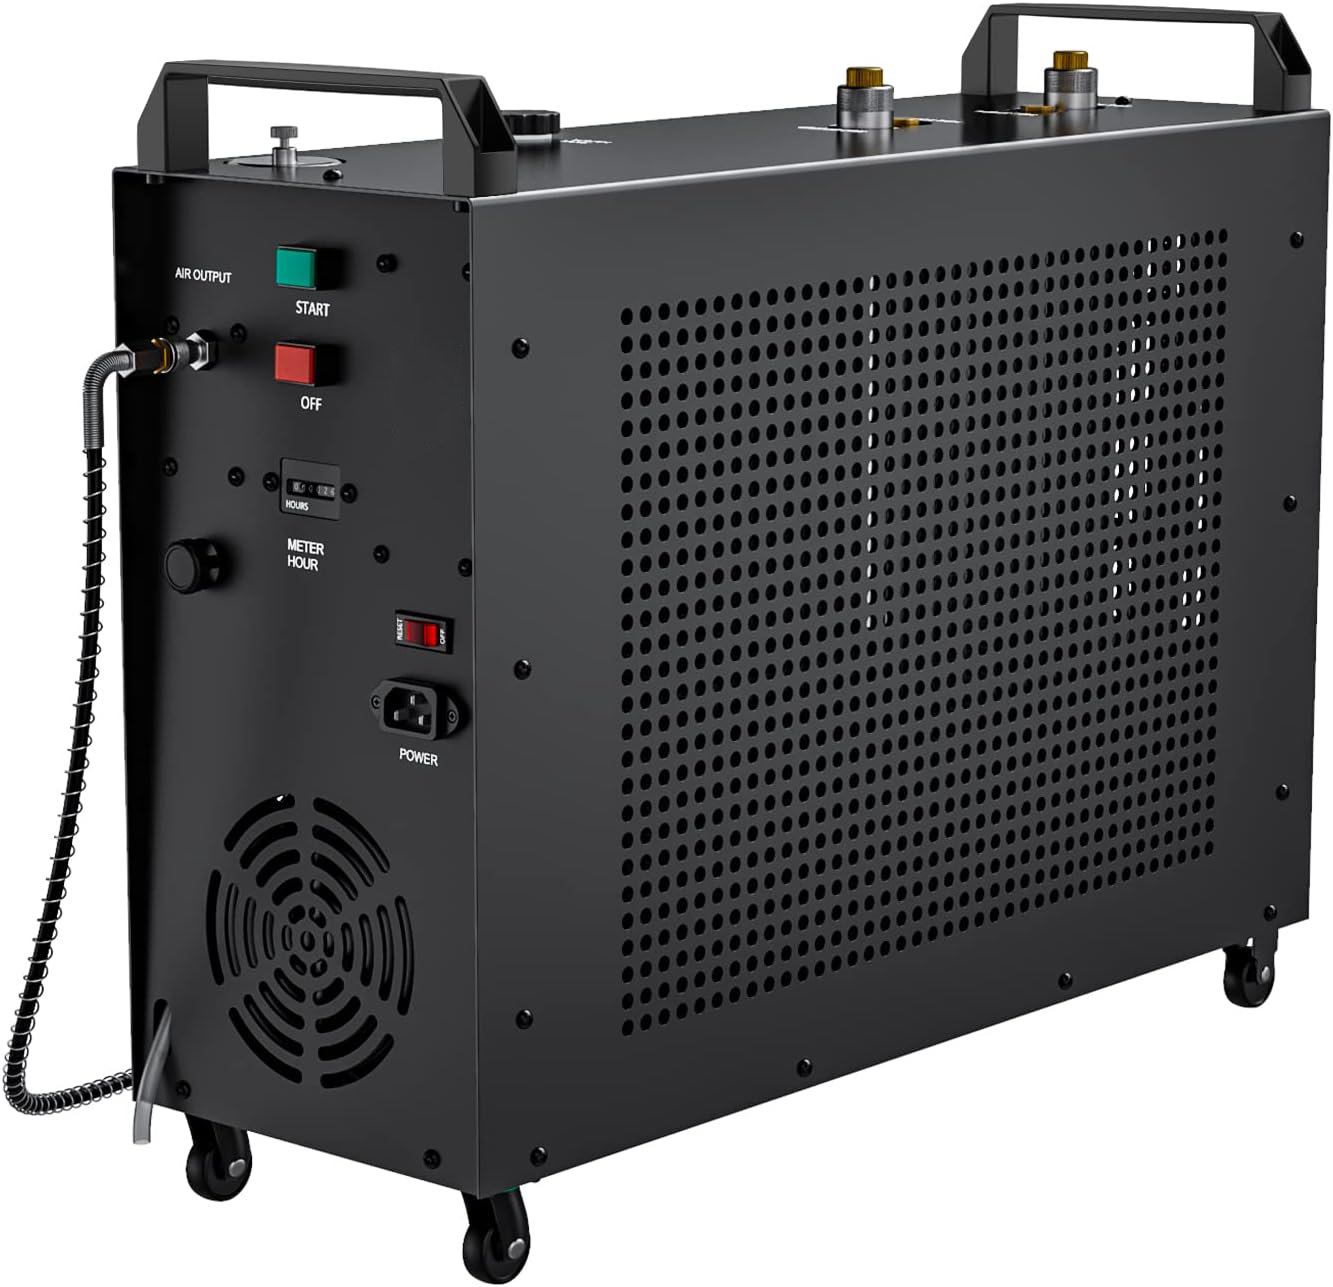 Air Blaster Maxx Ultra Fill:5800Psi Compressor Kit